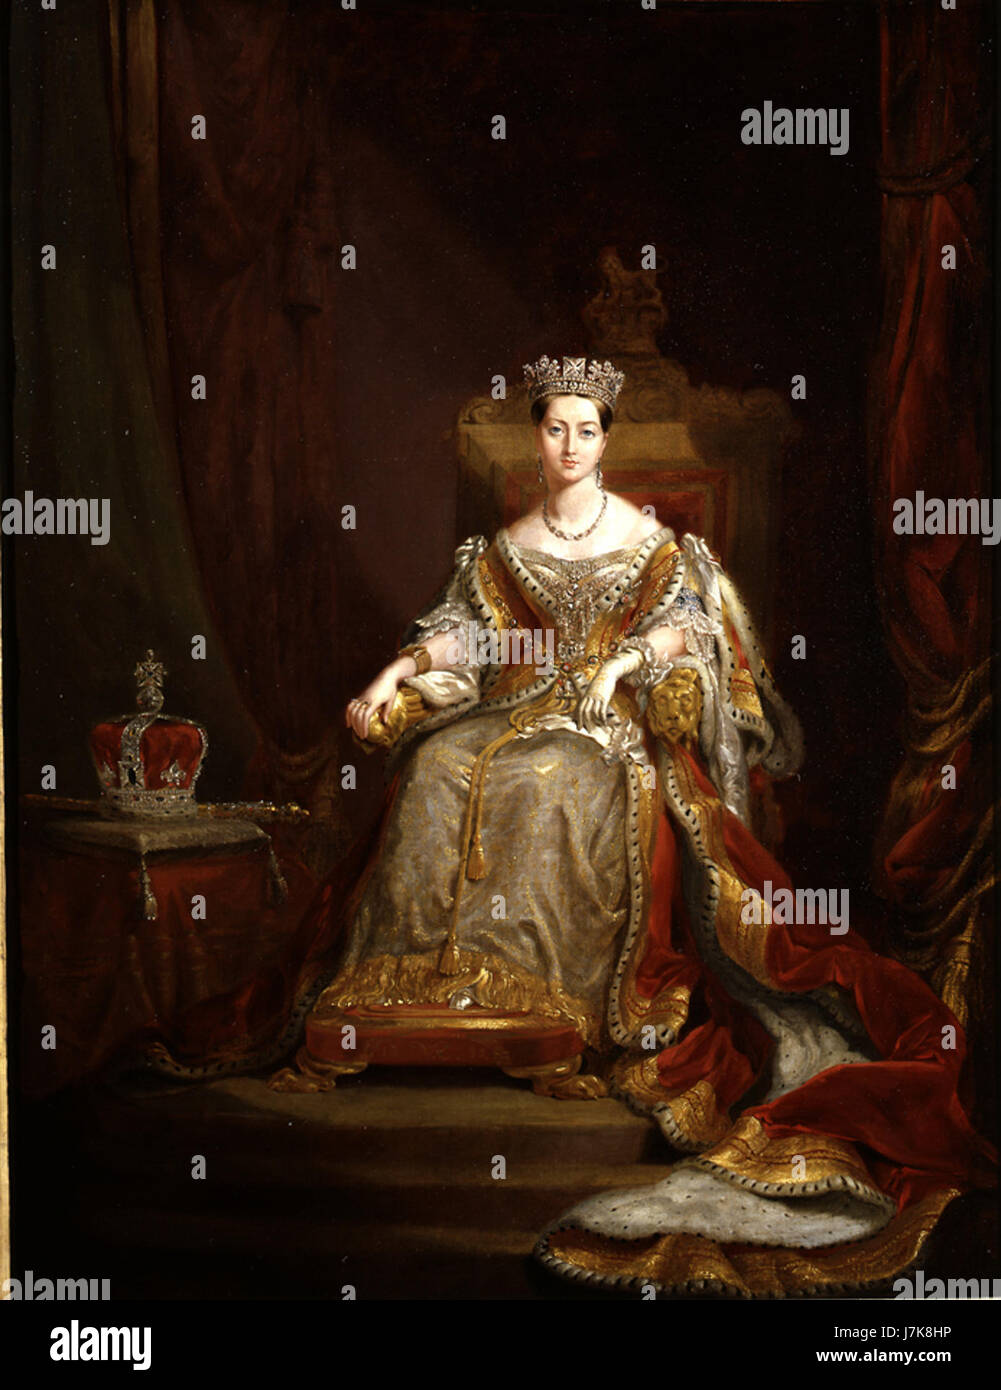 La reine Victoria en 1838 Coronation robes (copie de l'original à la Guildhall) Banque D'Images